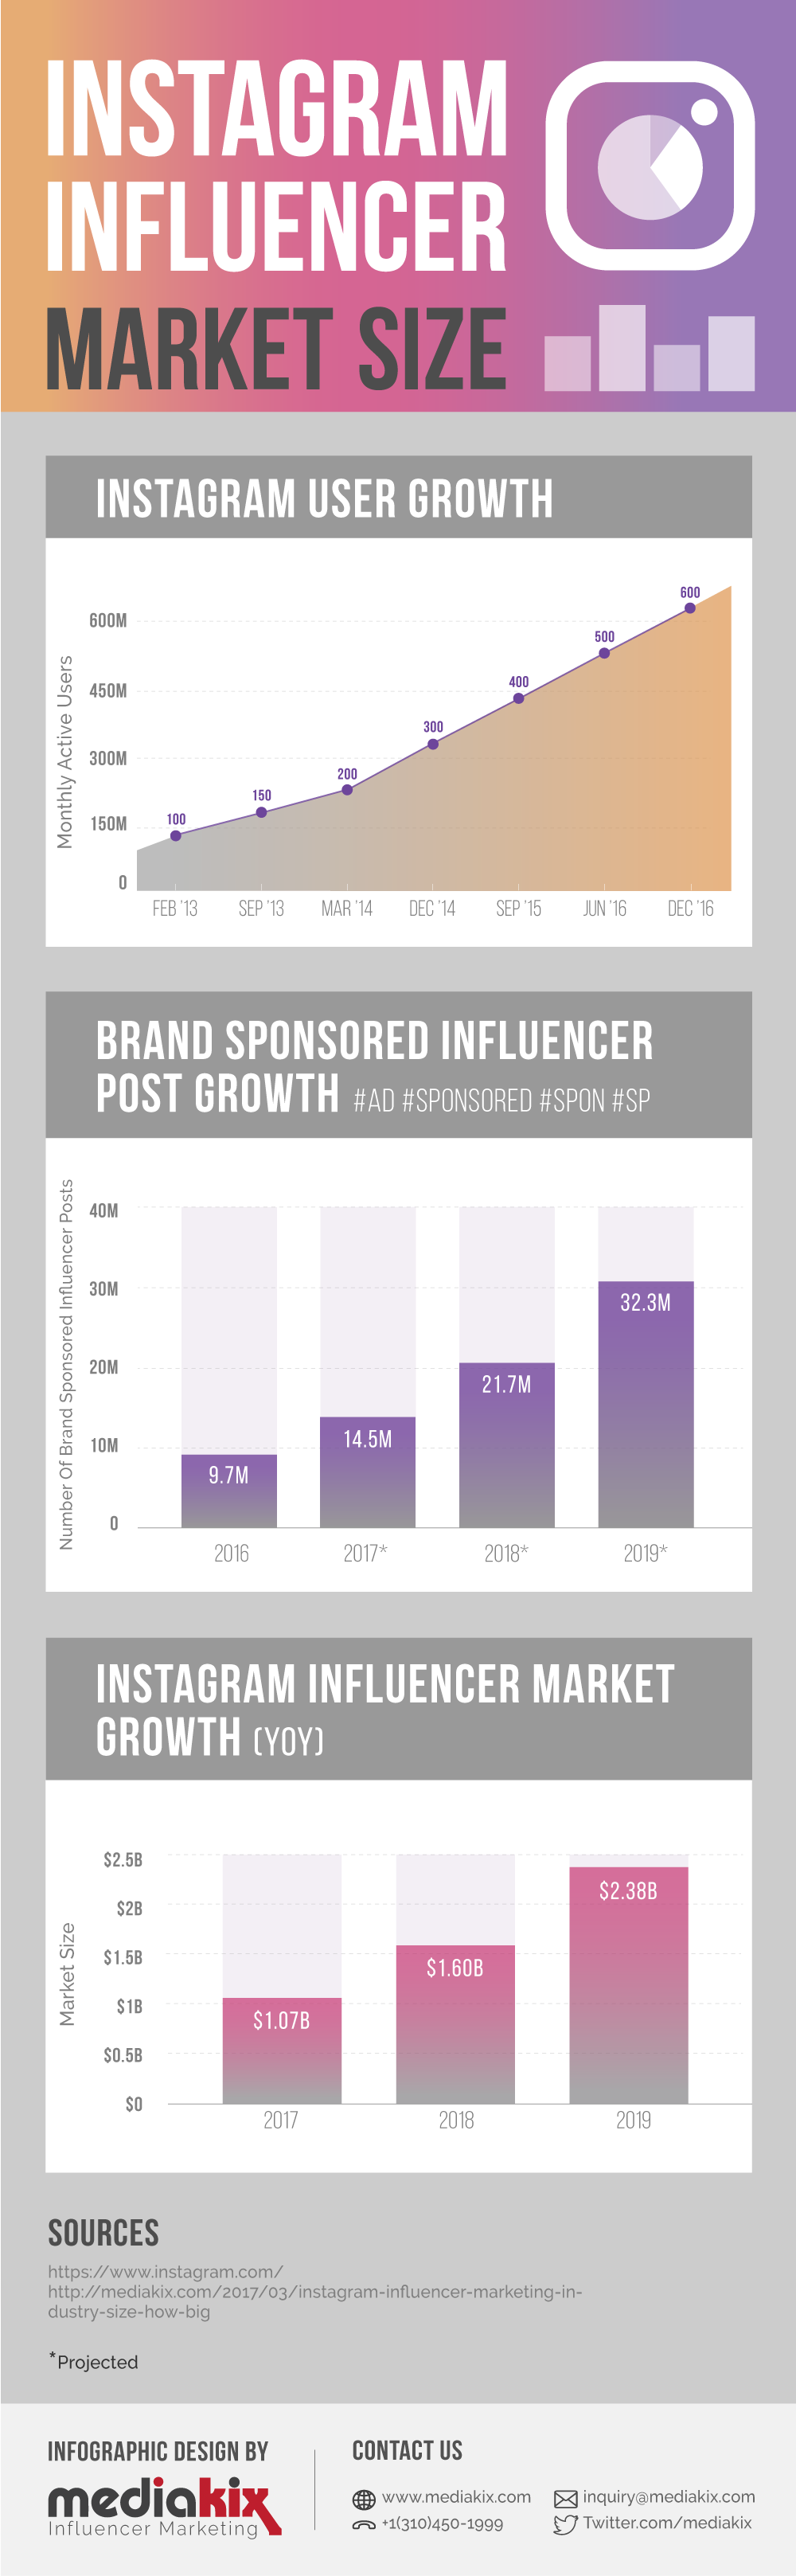 Influencer Marketing Social Media Statistics 2017